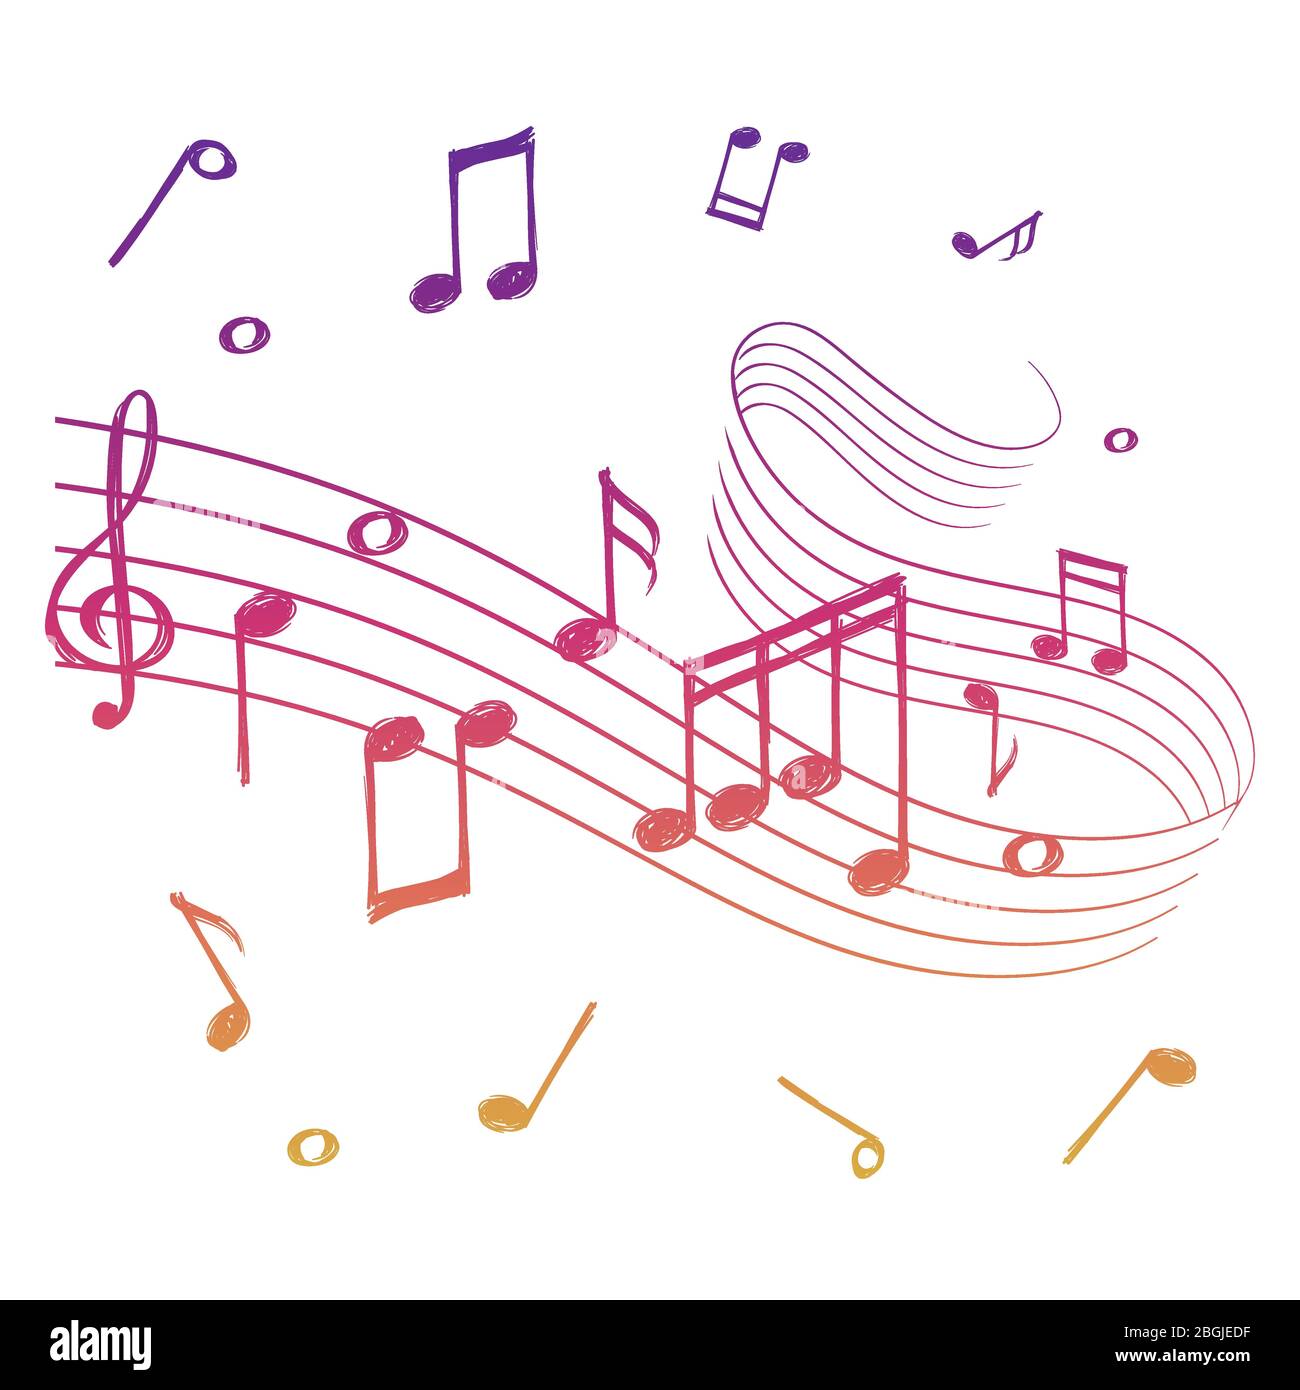 Esquisse d'onde sonore musicale colorée avec des notes musicales isolées. Illustration de fond de musique vectorielle Illustration de Vecteur